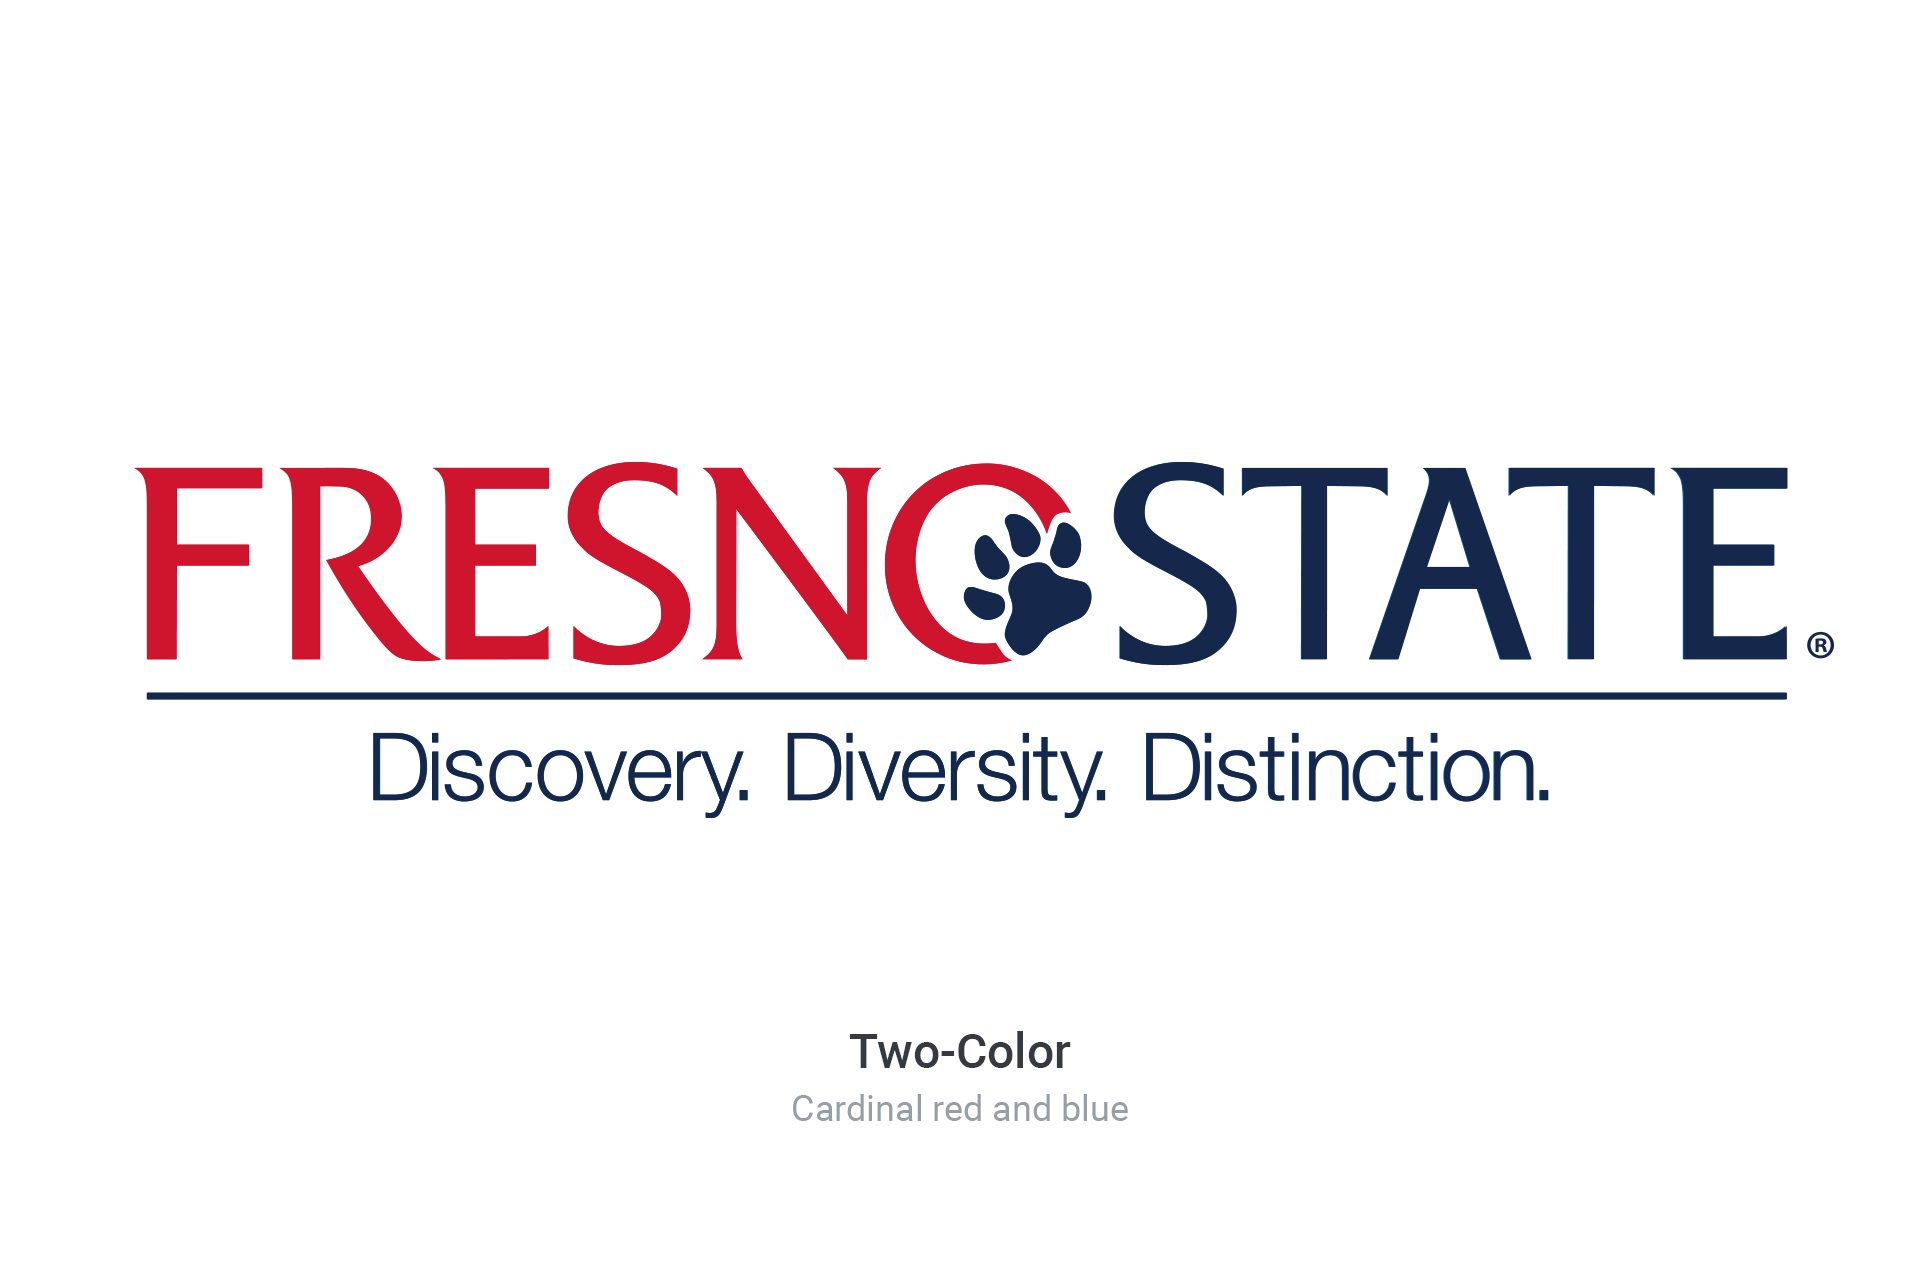 Fresno State logo